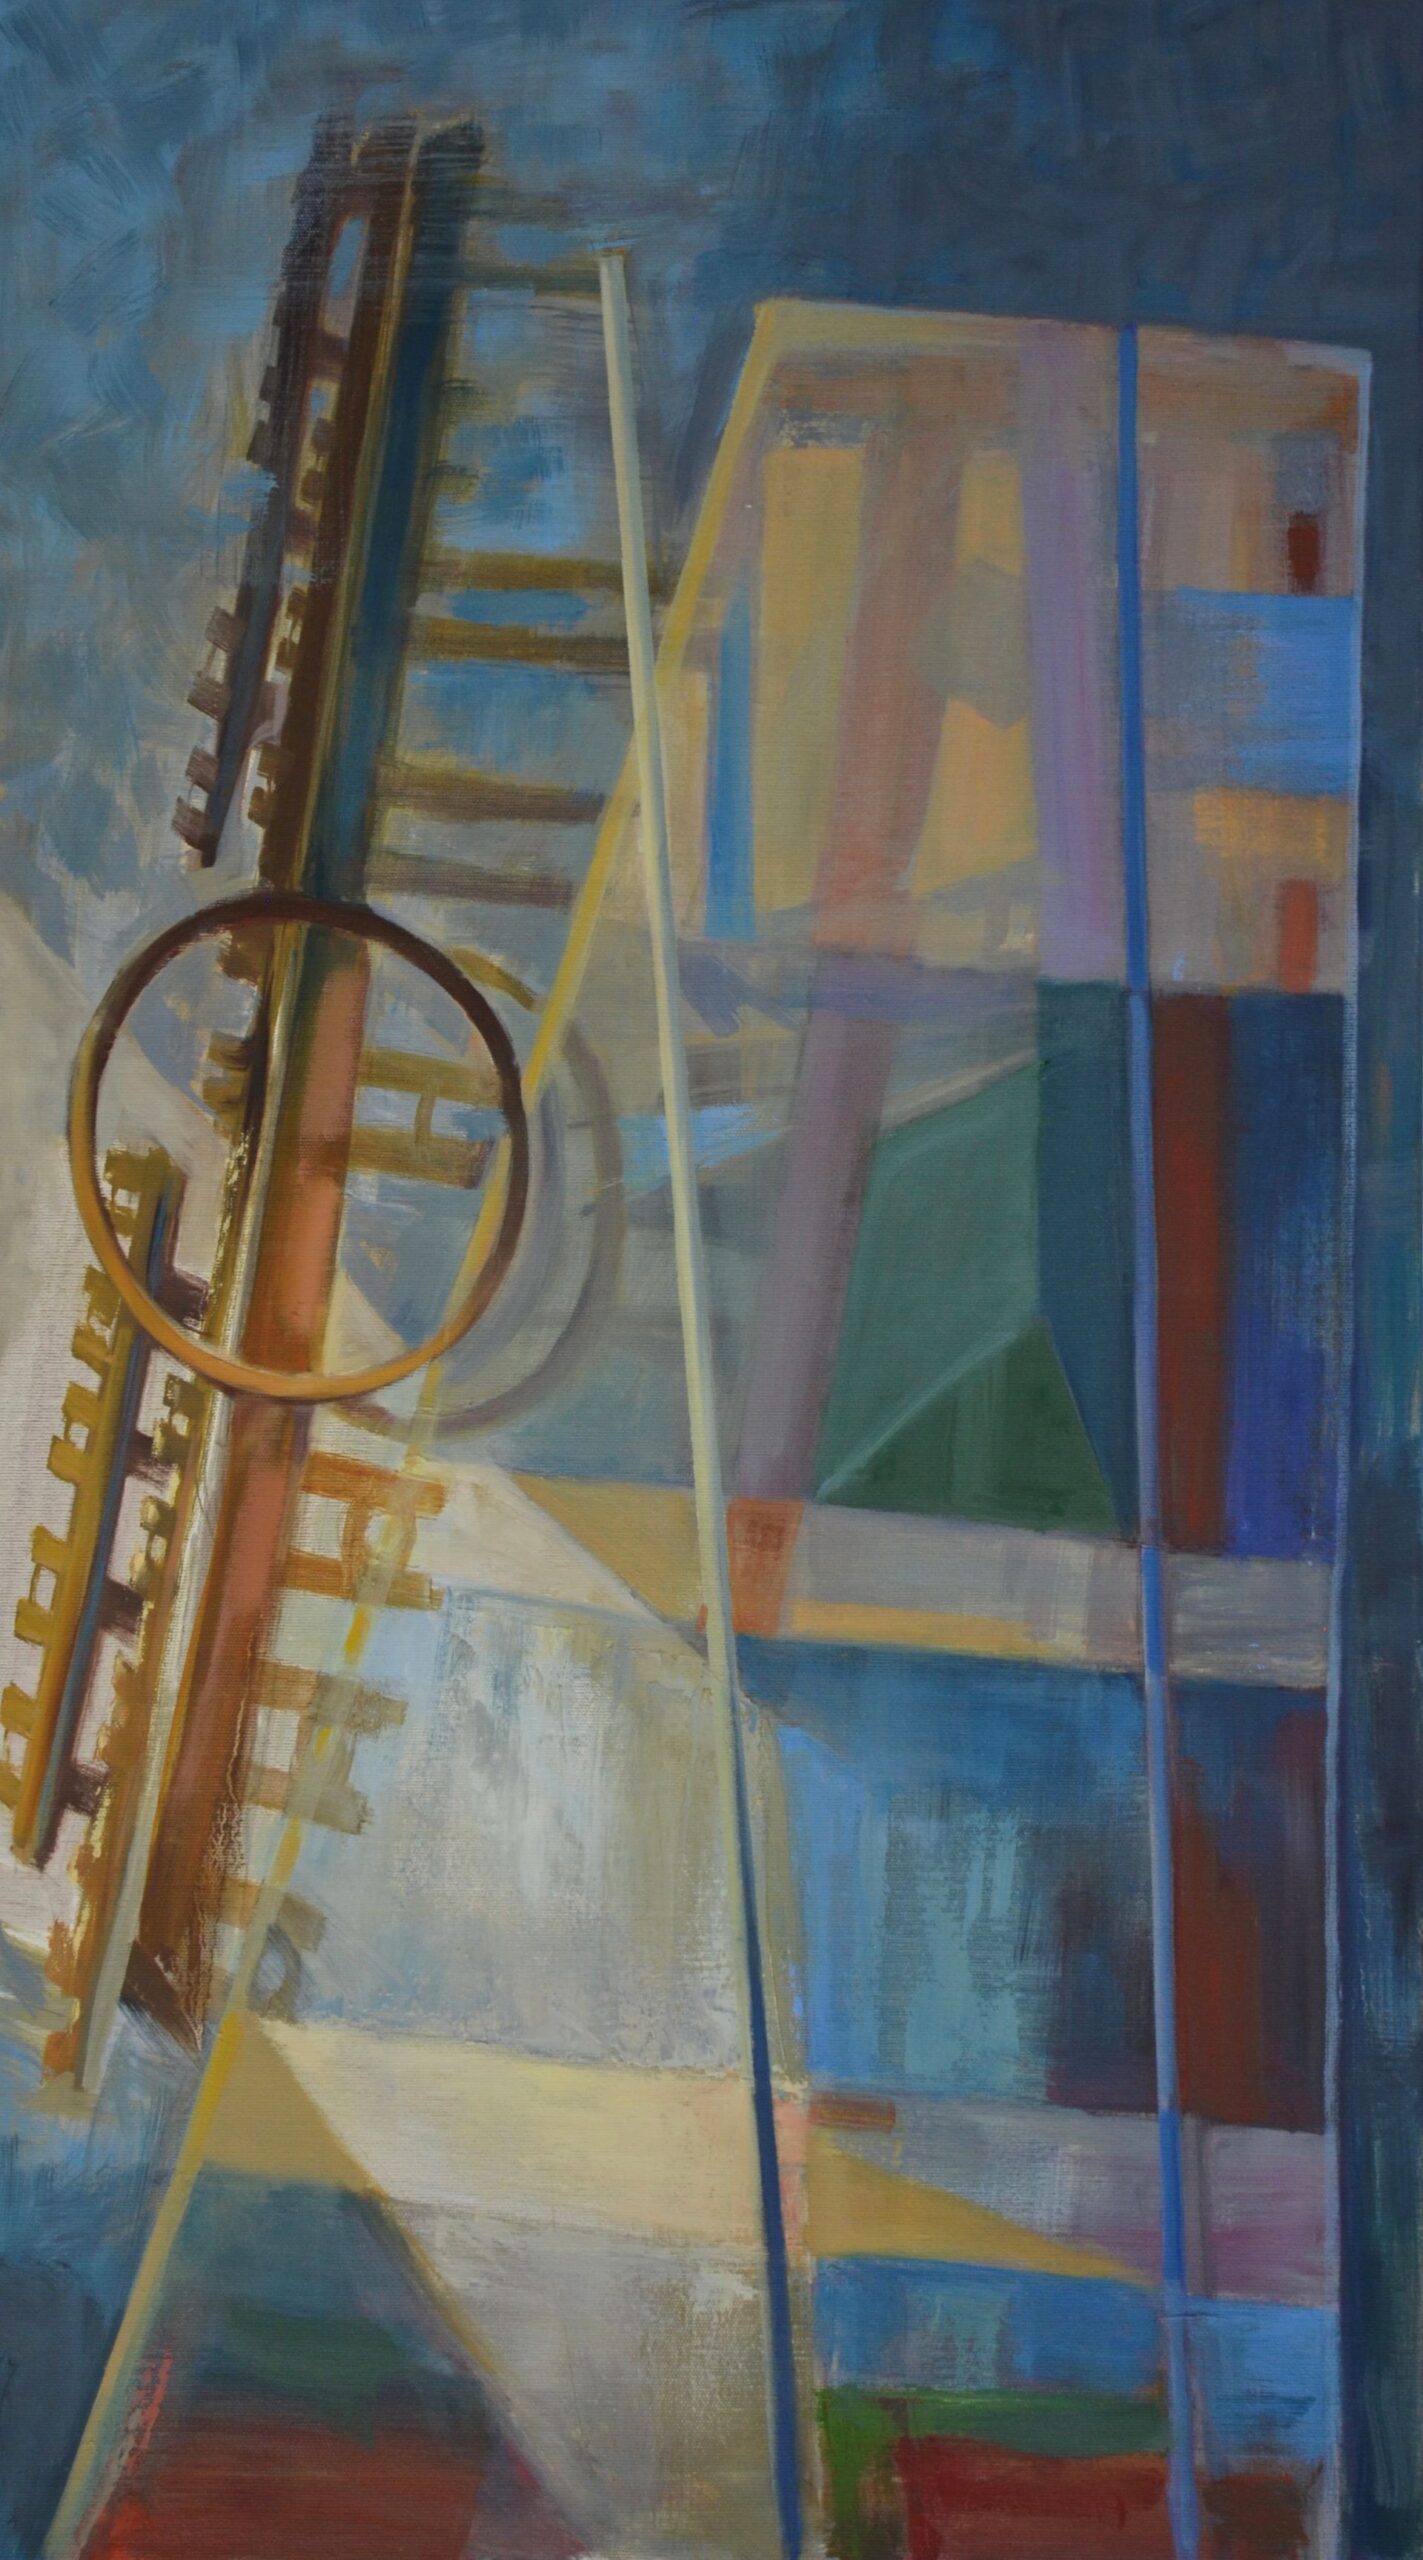 Wertykalna kompozycja malarska składająca się z dwóch zasadniczych elementów, przezroczystych, kolorowych form imitujących szkło po prawej stronie w kontraście do rdzawej metalowej formy kojarzącej się z rodzajem muzycznego instrumentu.